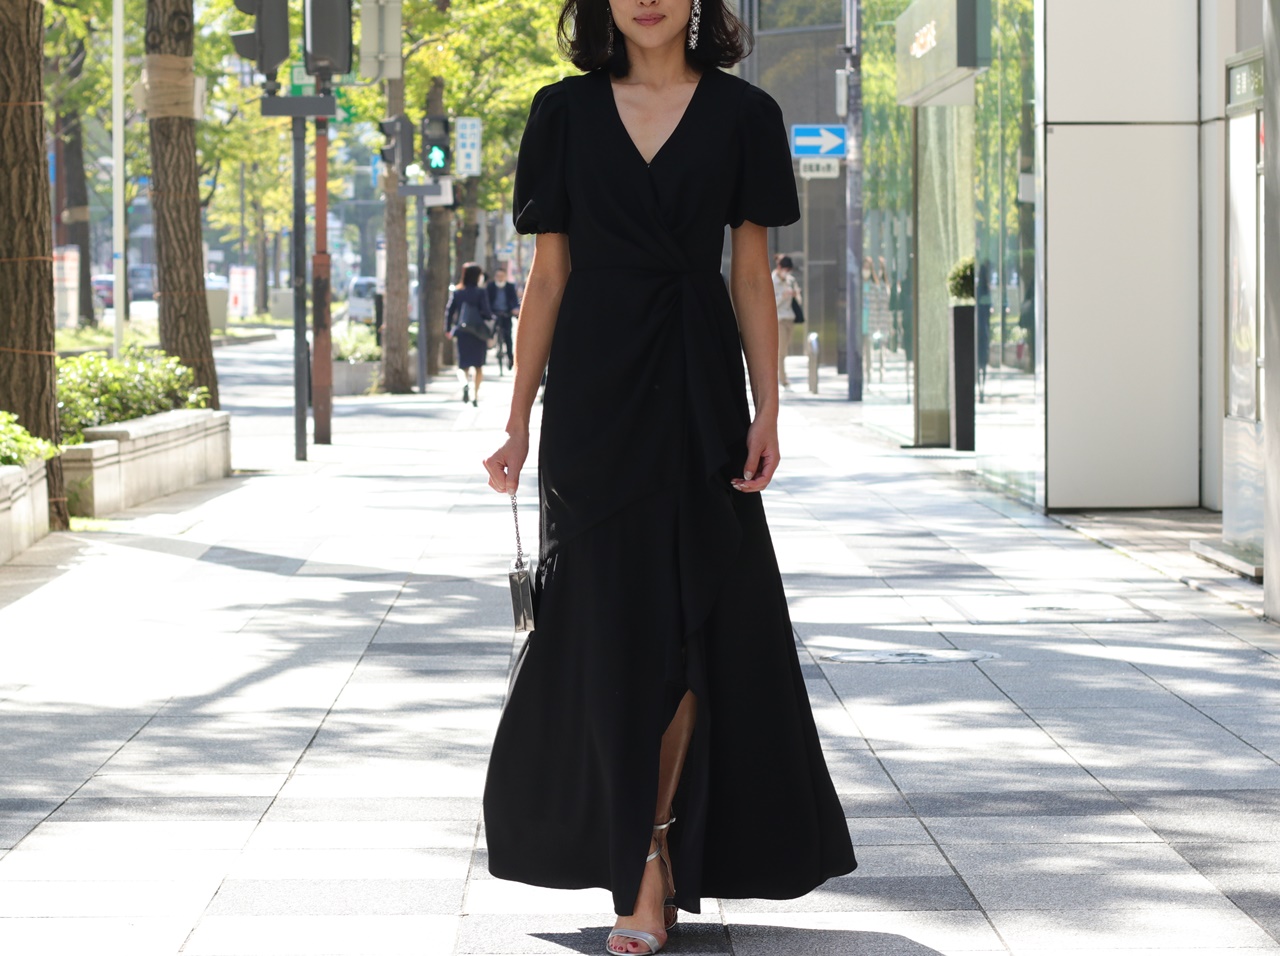 Vネックラインの黒いロングドレスは骨格ストレートの方におすすめのレンタルドレス